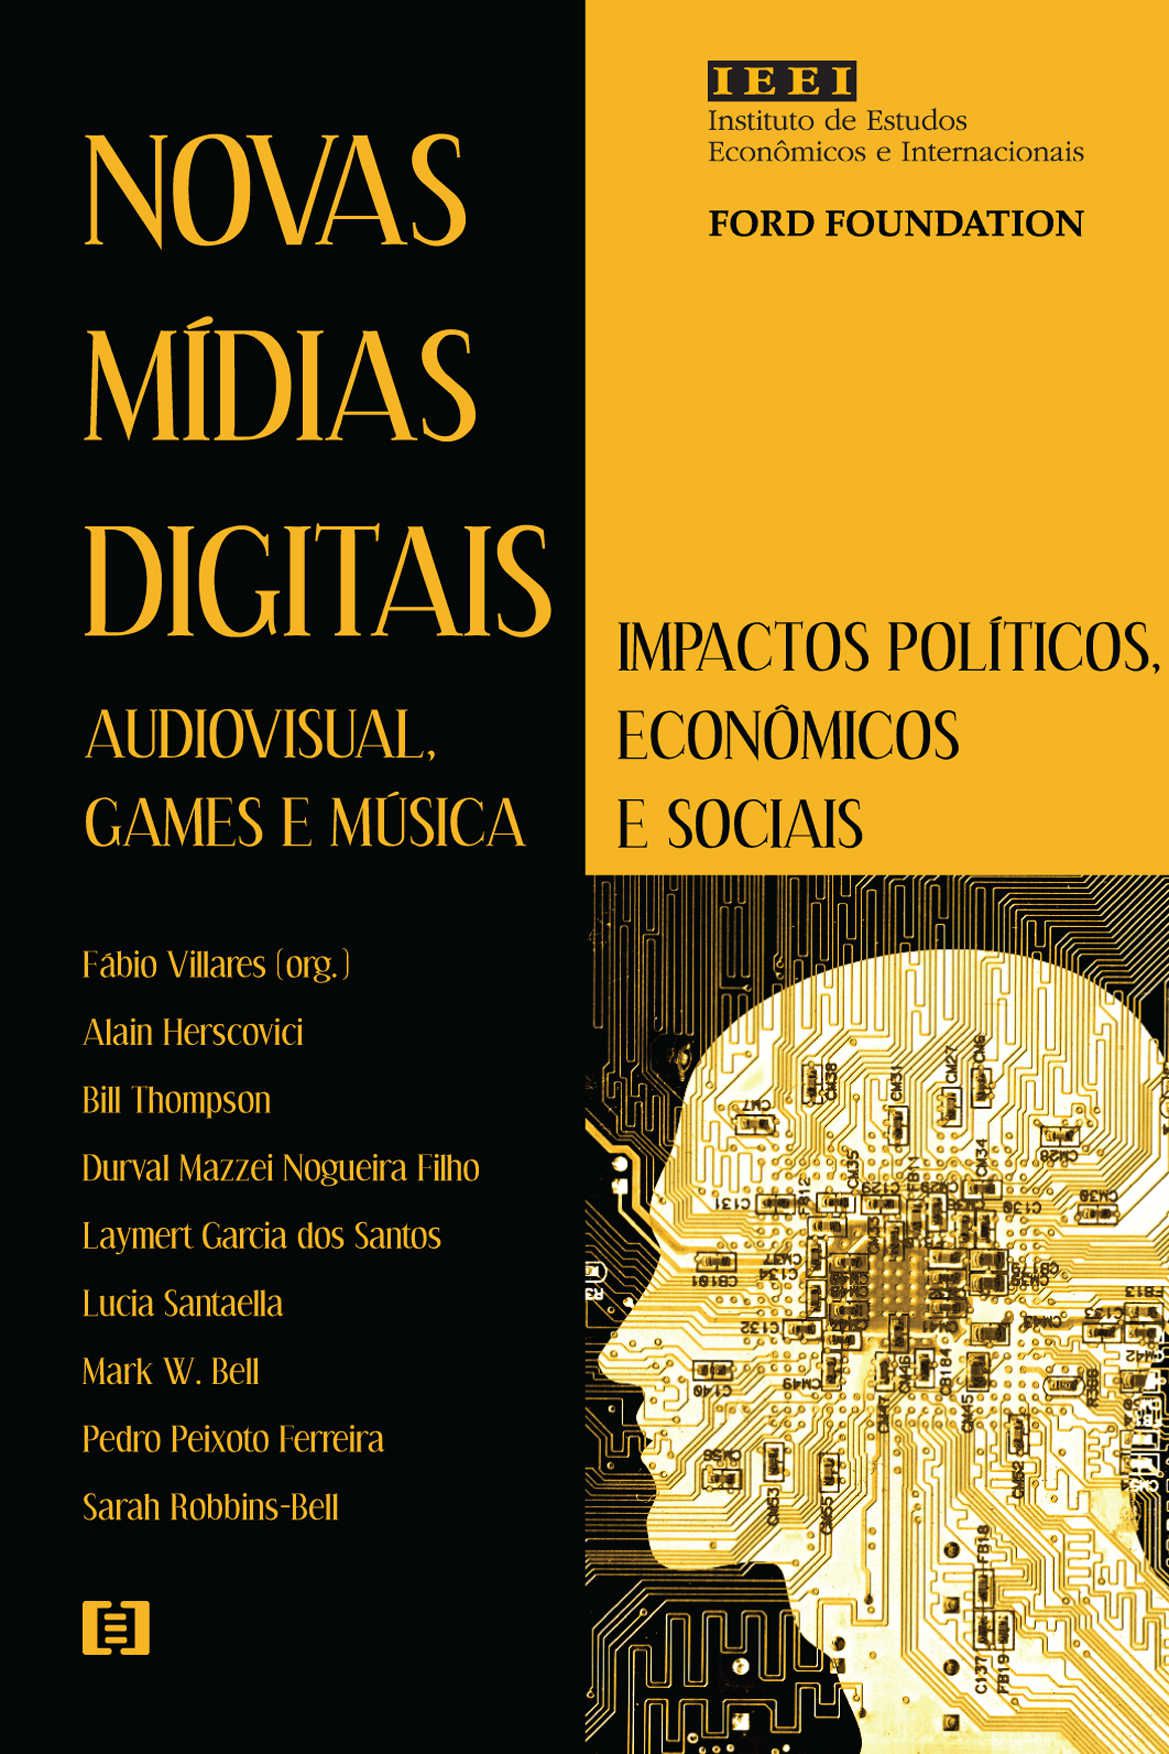 Novas mídias digitais (audiovisual, games e música): Impactos políticos, econômicos e sociais